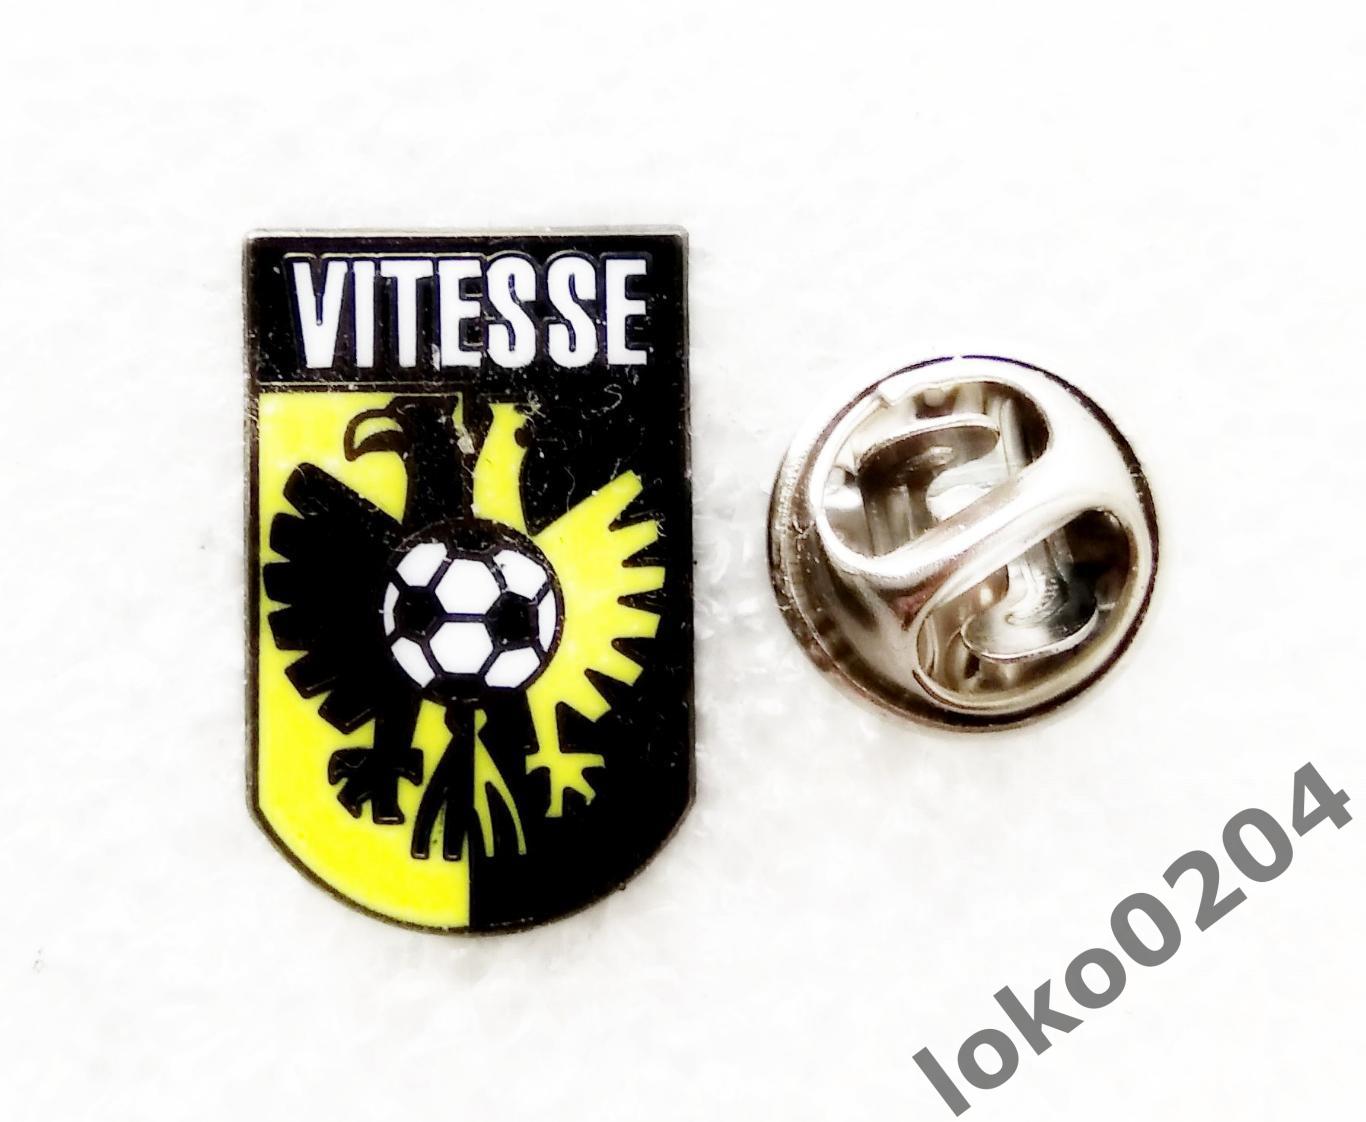 СБВ Витесс Арнем - SBV Vitesse Arnhem - НИДЕРЛАНДЫ.